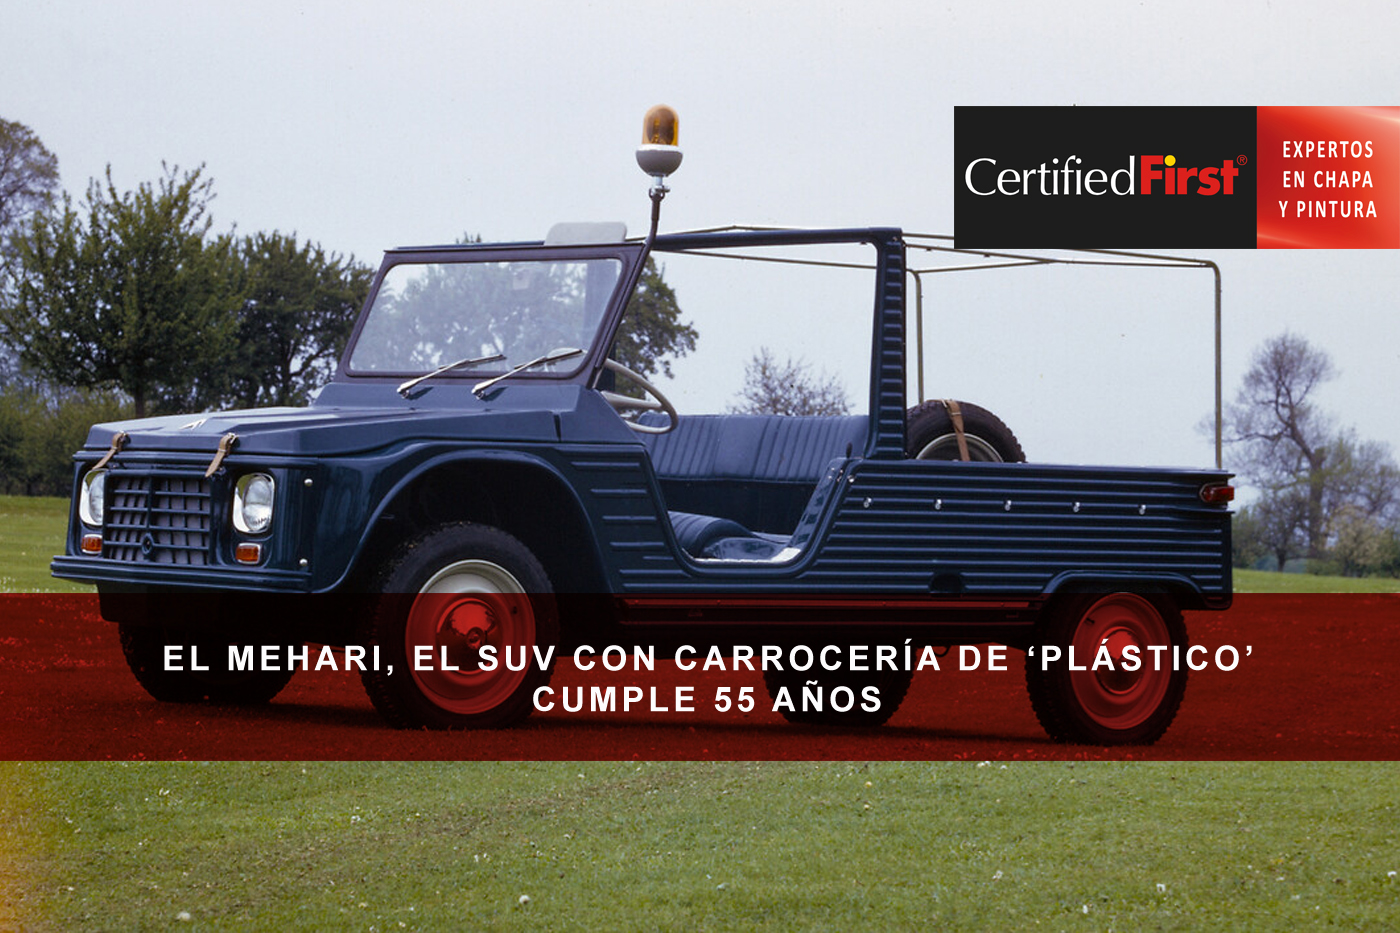 El Mehari, el SUV con carrocería de ‘plástico’ cumple 55 años